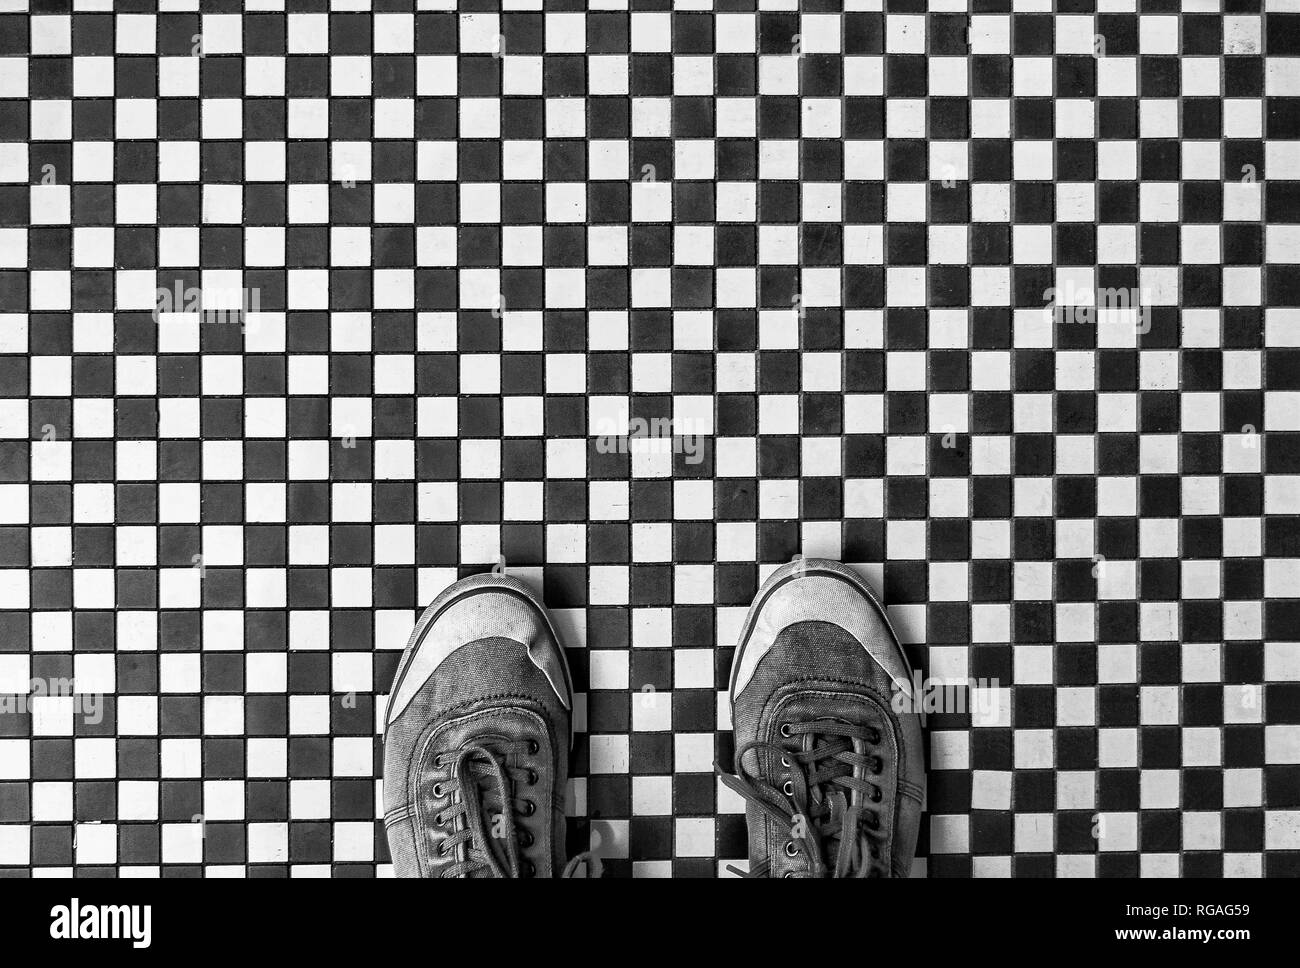 Mirando de arriba abajo en un par de zapatos o zapatillas desgastadas de pie en un blanco y negro a cuadros pisos de mosaico cerámico con espacio de copia Foto de stock